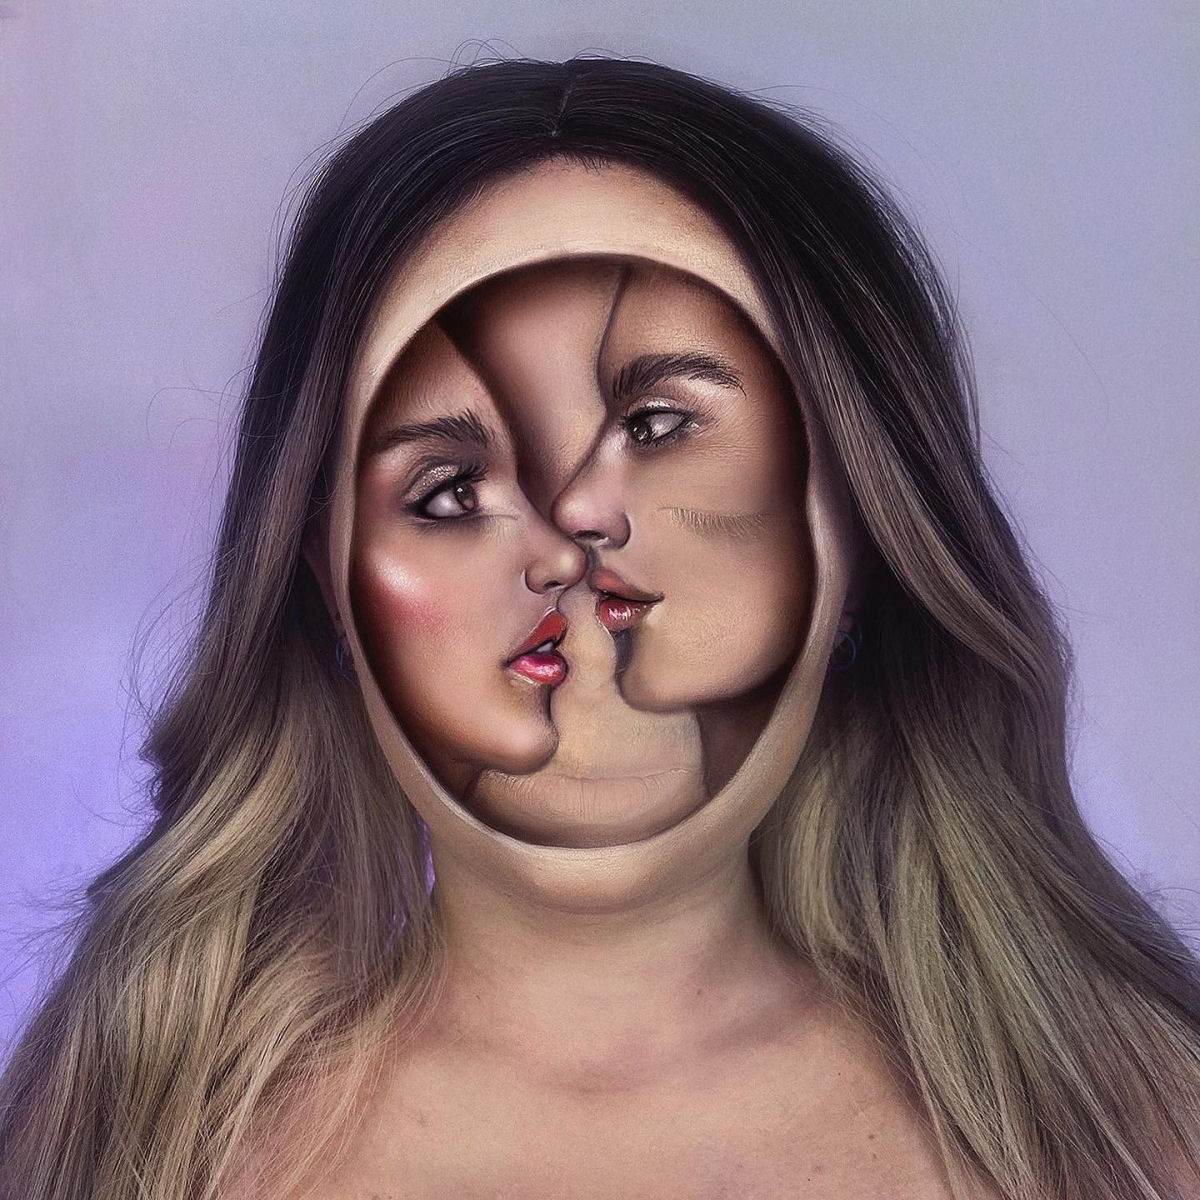 Artista usa seu próprio rosto como tela para ilusões surrealistas 08